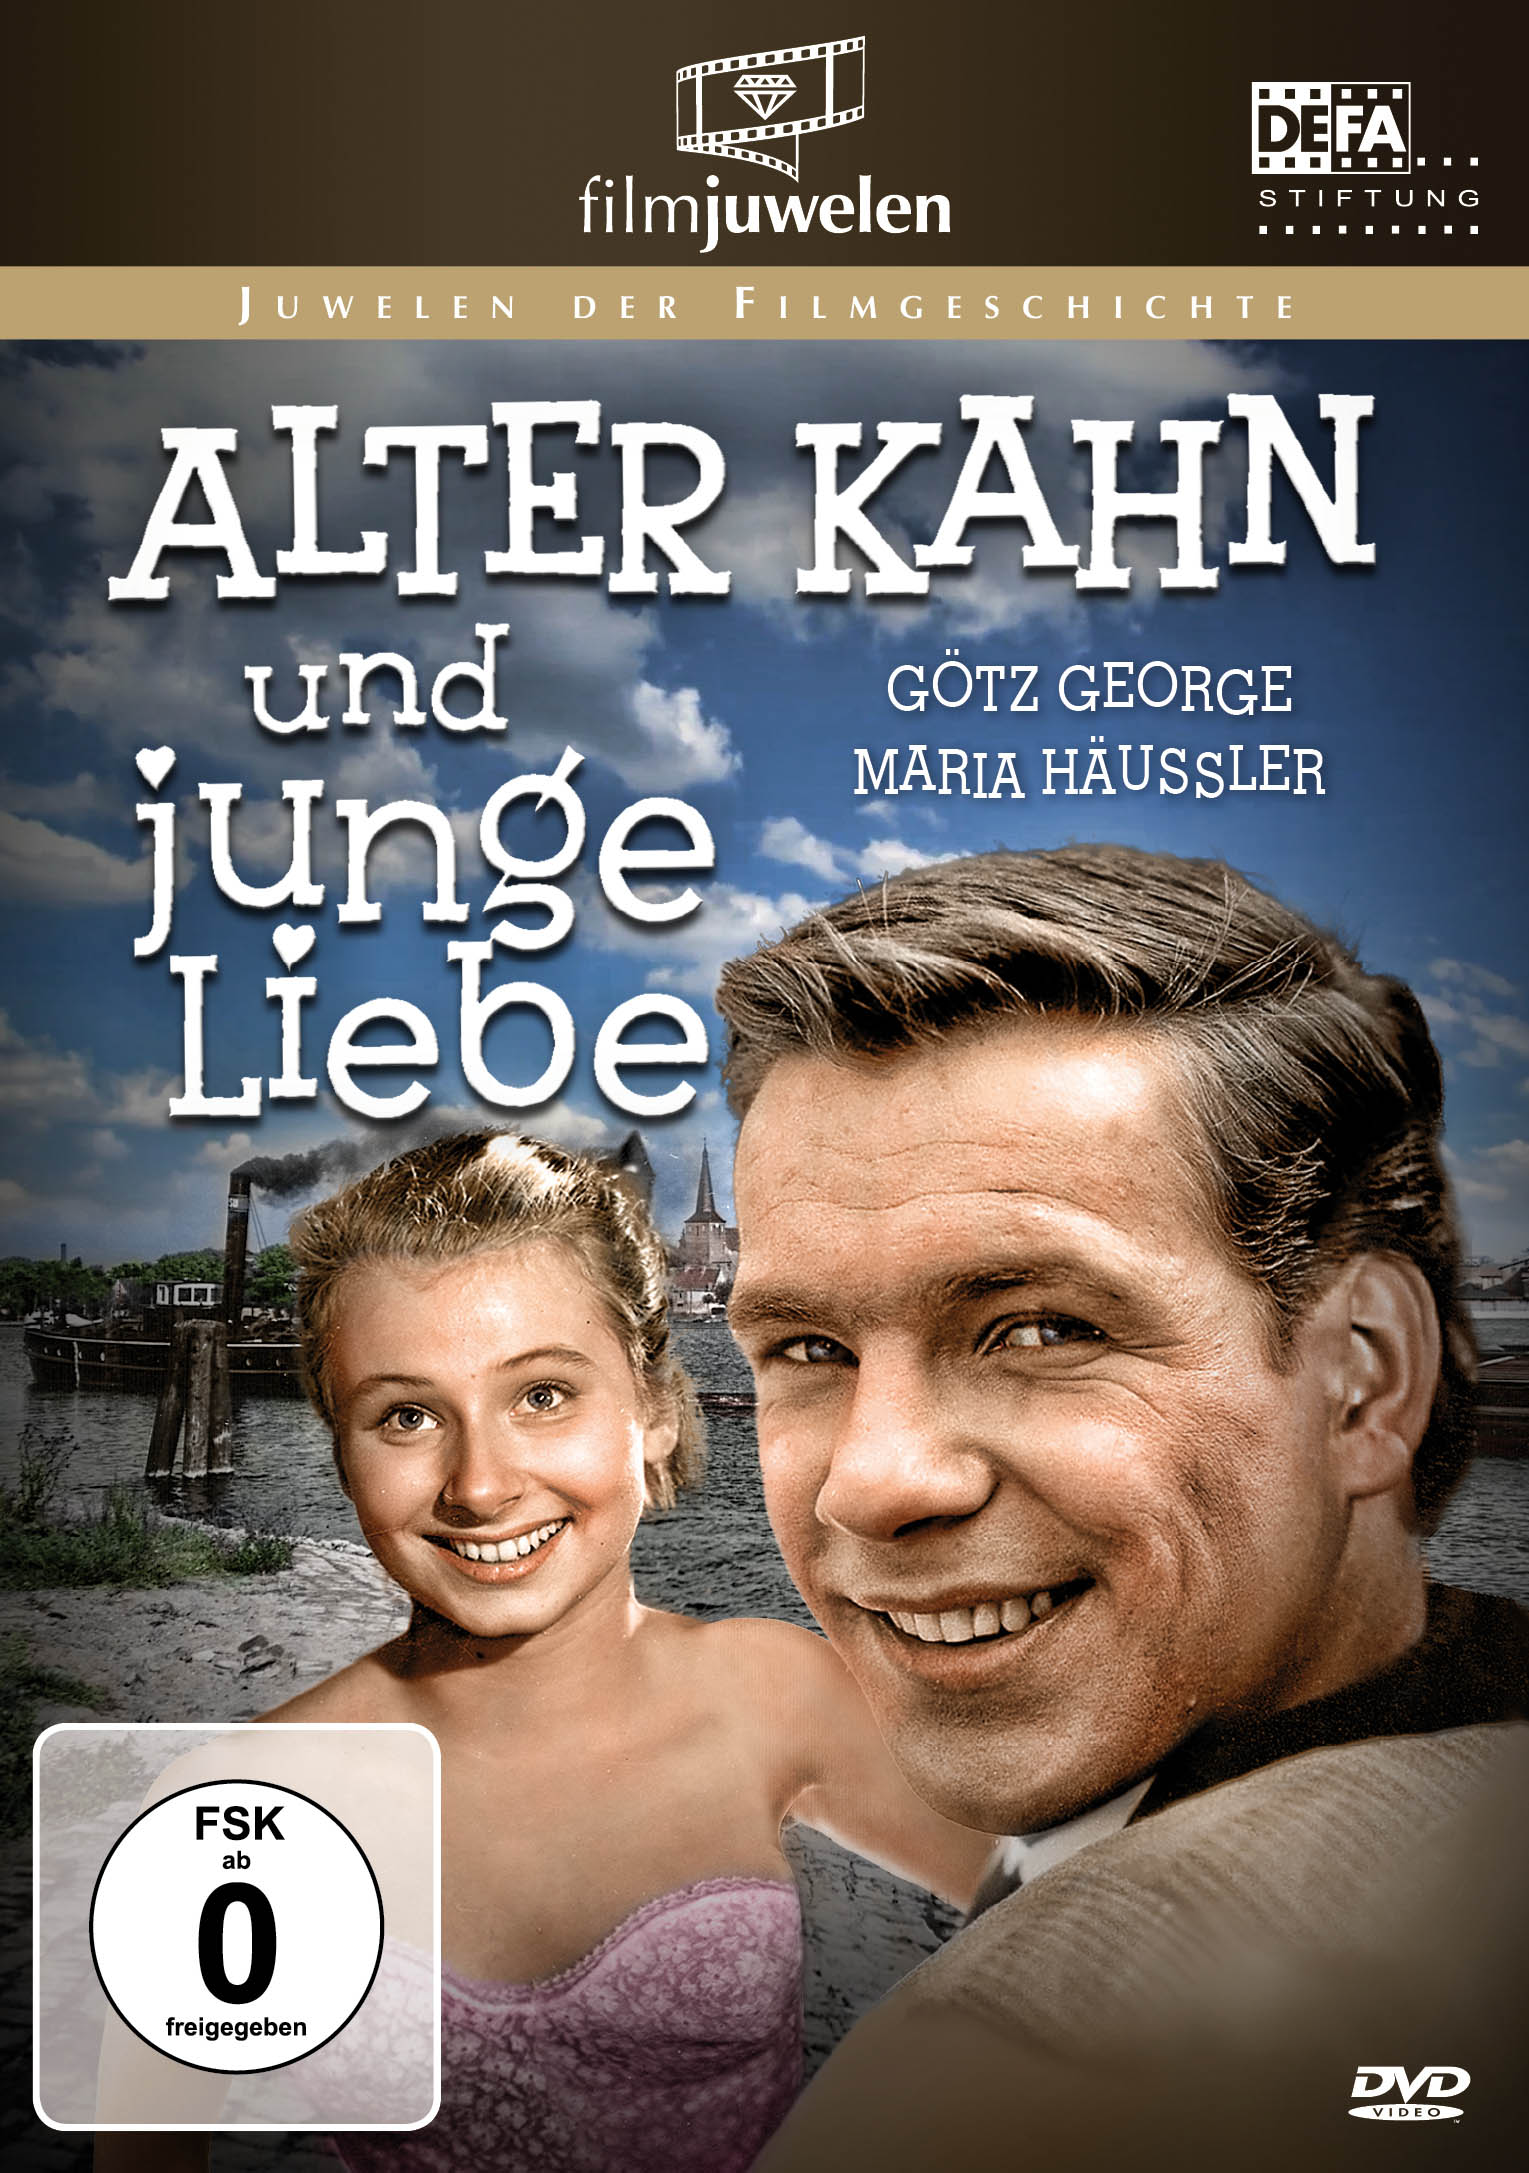 DVD Kahn junge und Alter Liebe (Goetz